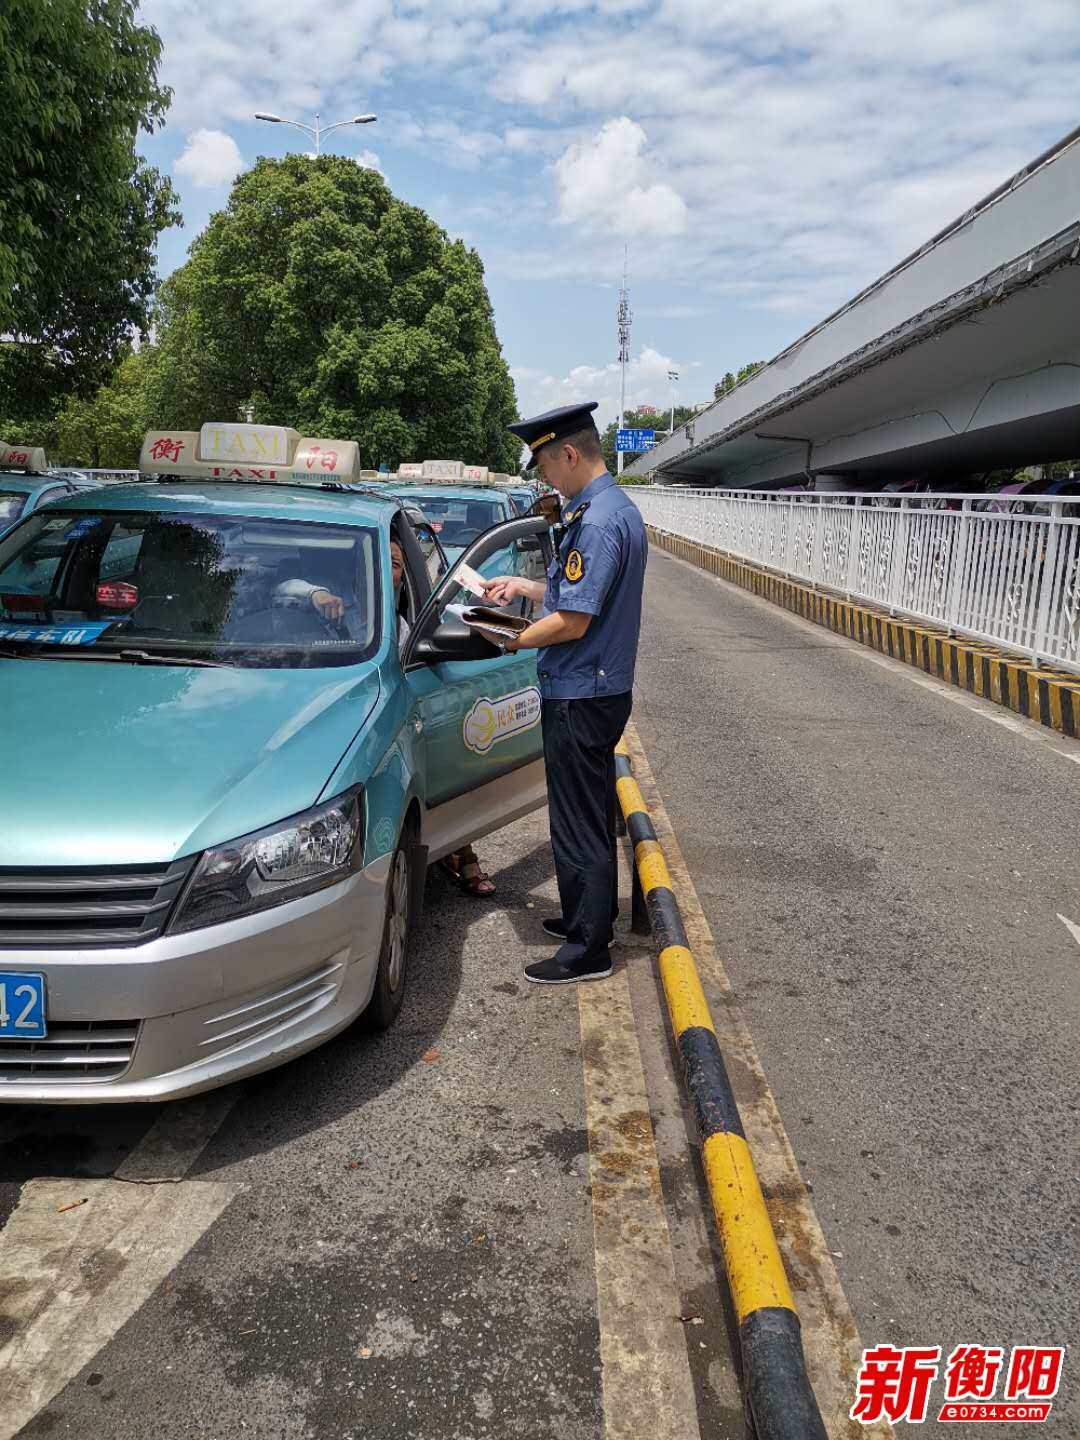 衡阳市交通执法部门对出租车不出具发票的